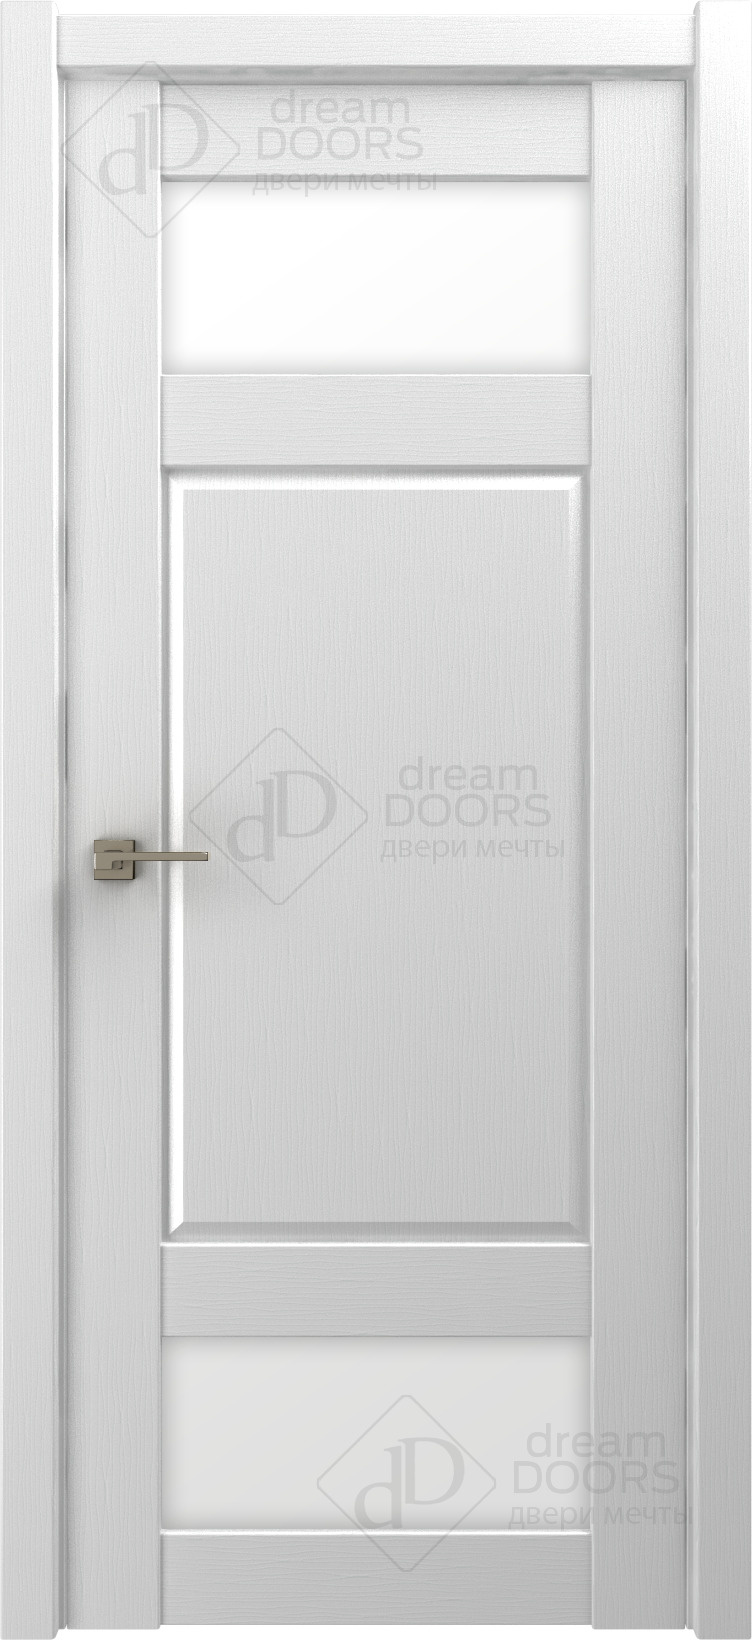 Dream Doors Межкомнатная дверь P17, арт. 18227 - фото №2